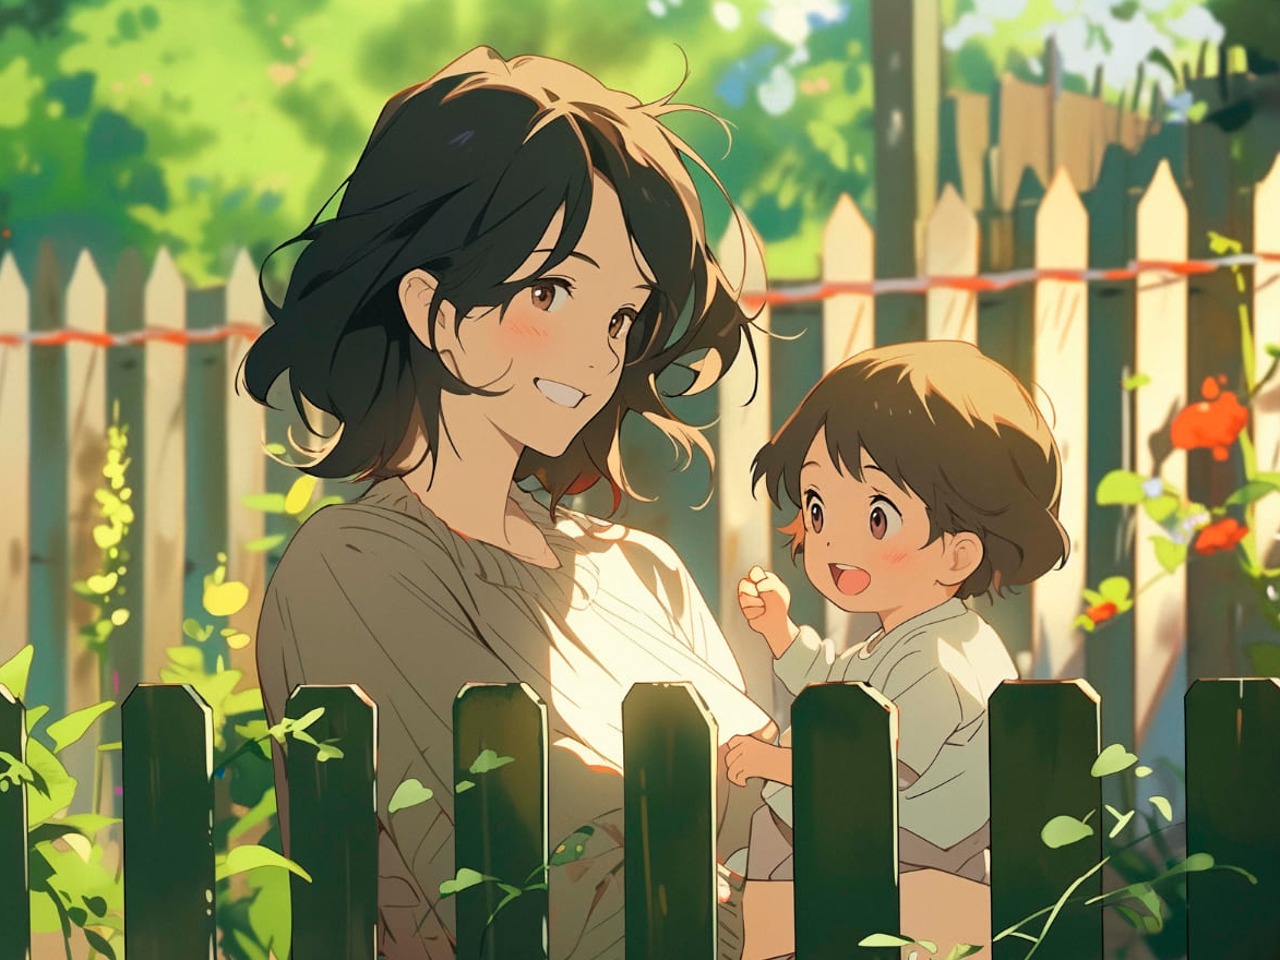 Une mère et son enfant dans un jardin, dessin style animé.